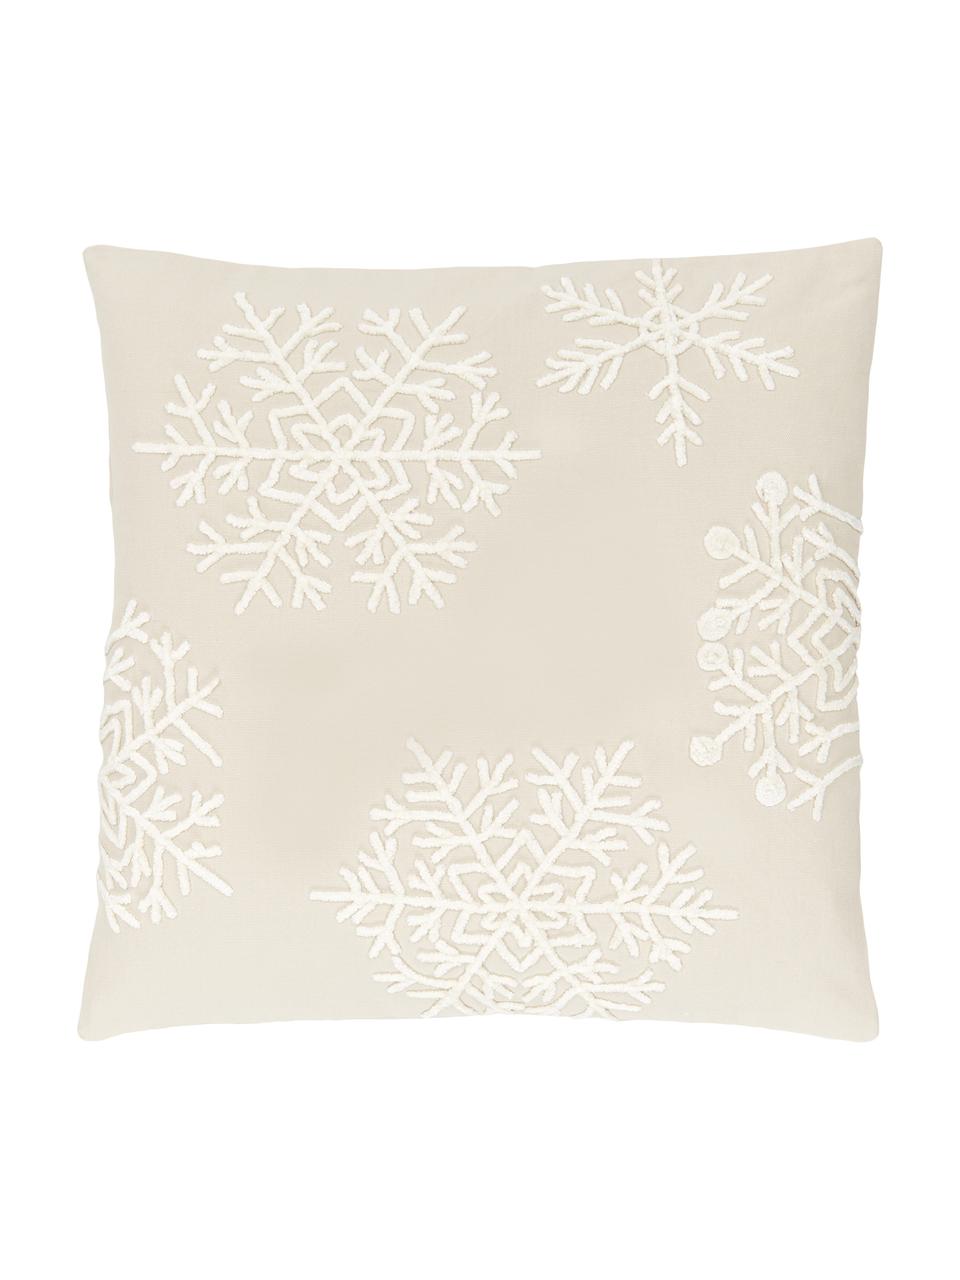 Geborduurde kussenhoes Snowflake in beige, 100% katoen, Beige, crèmewit, B 45 x L 45 cm